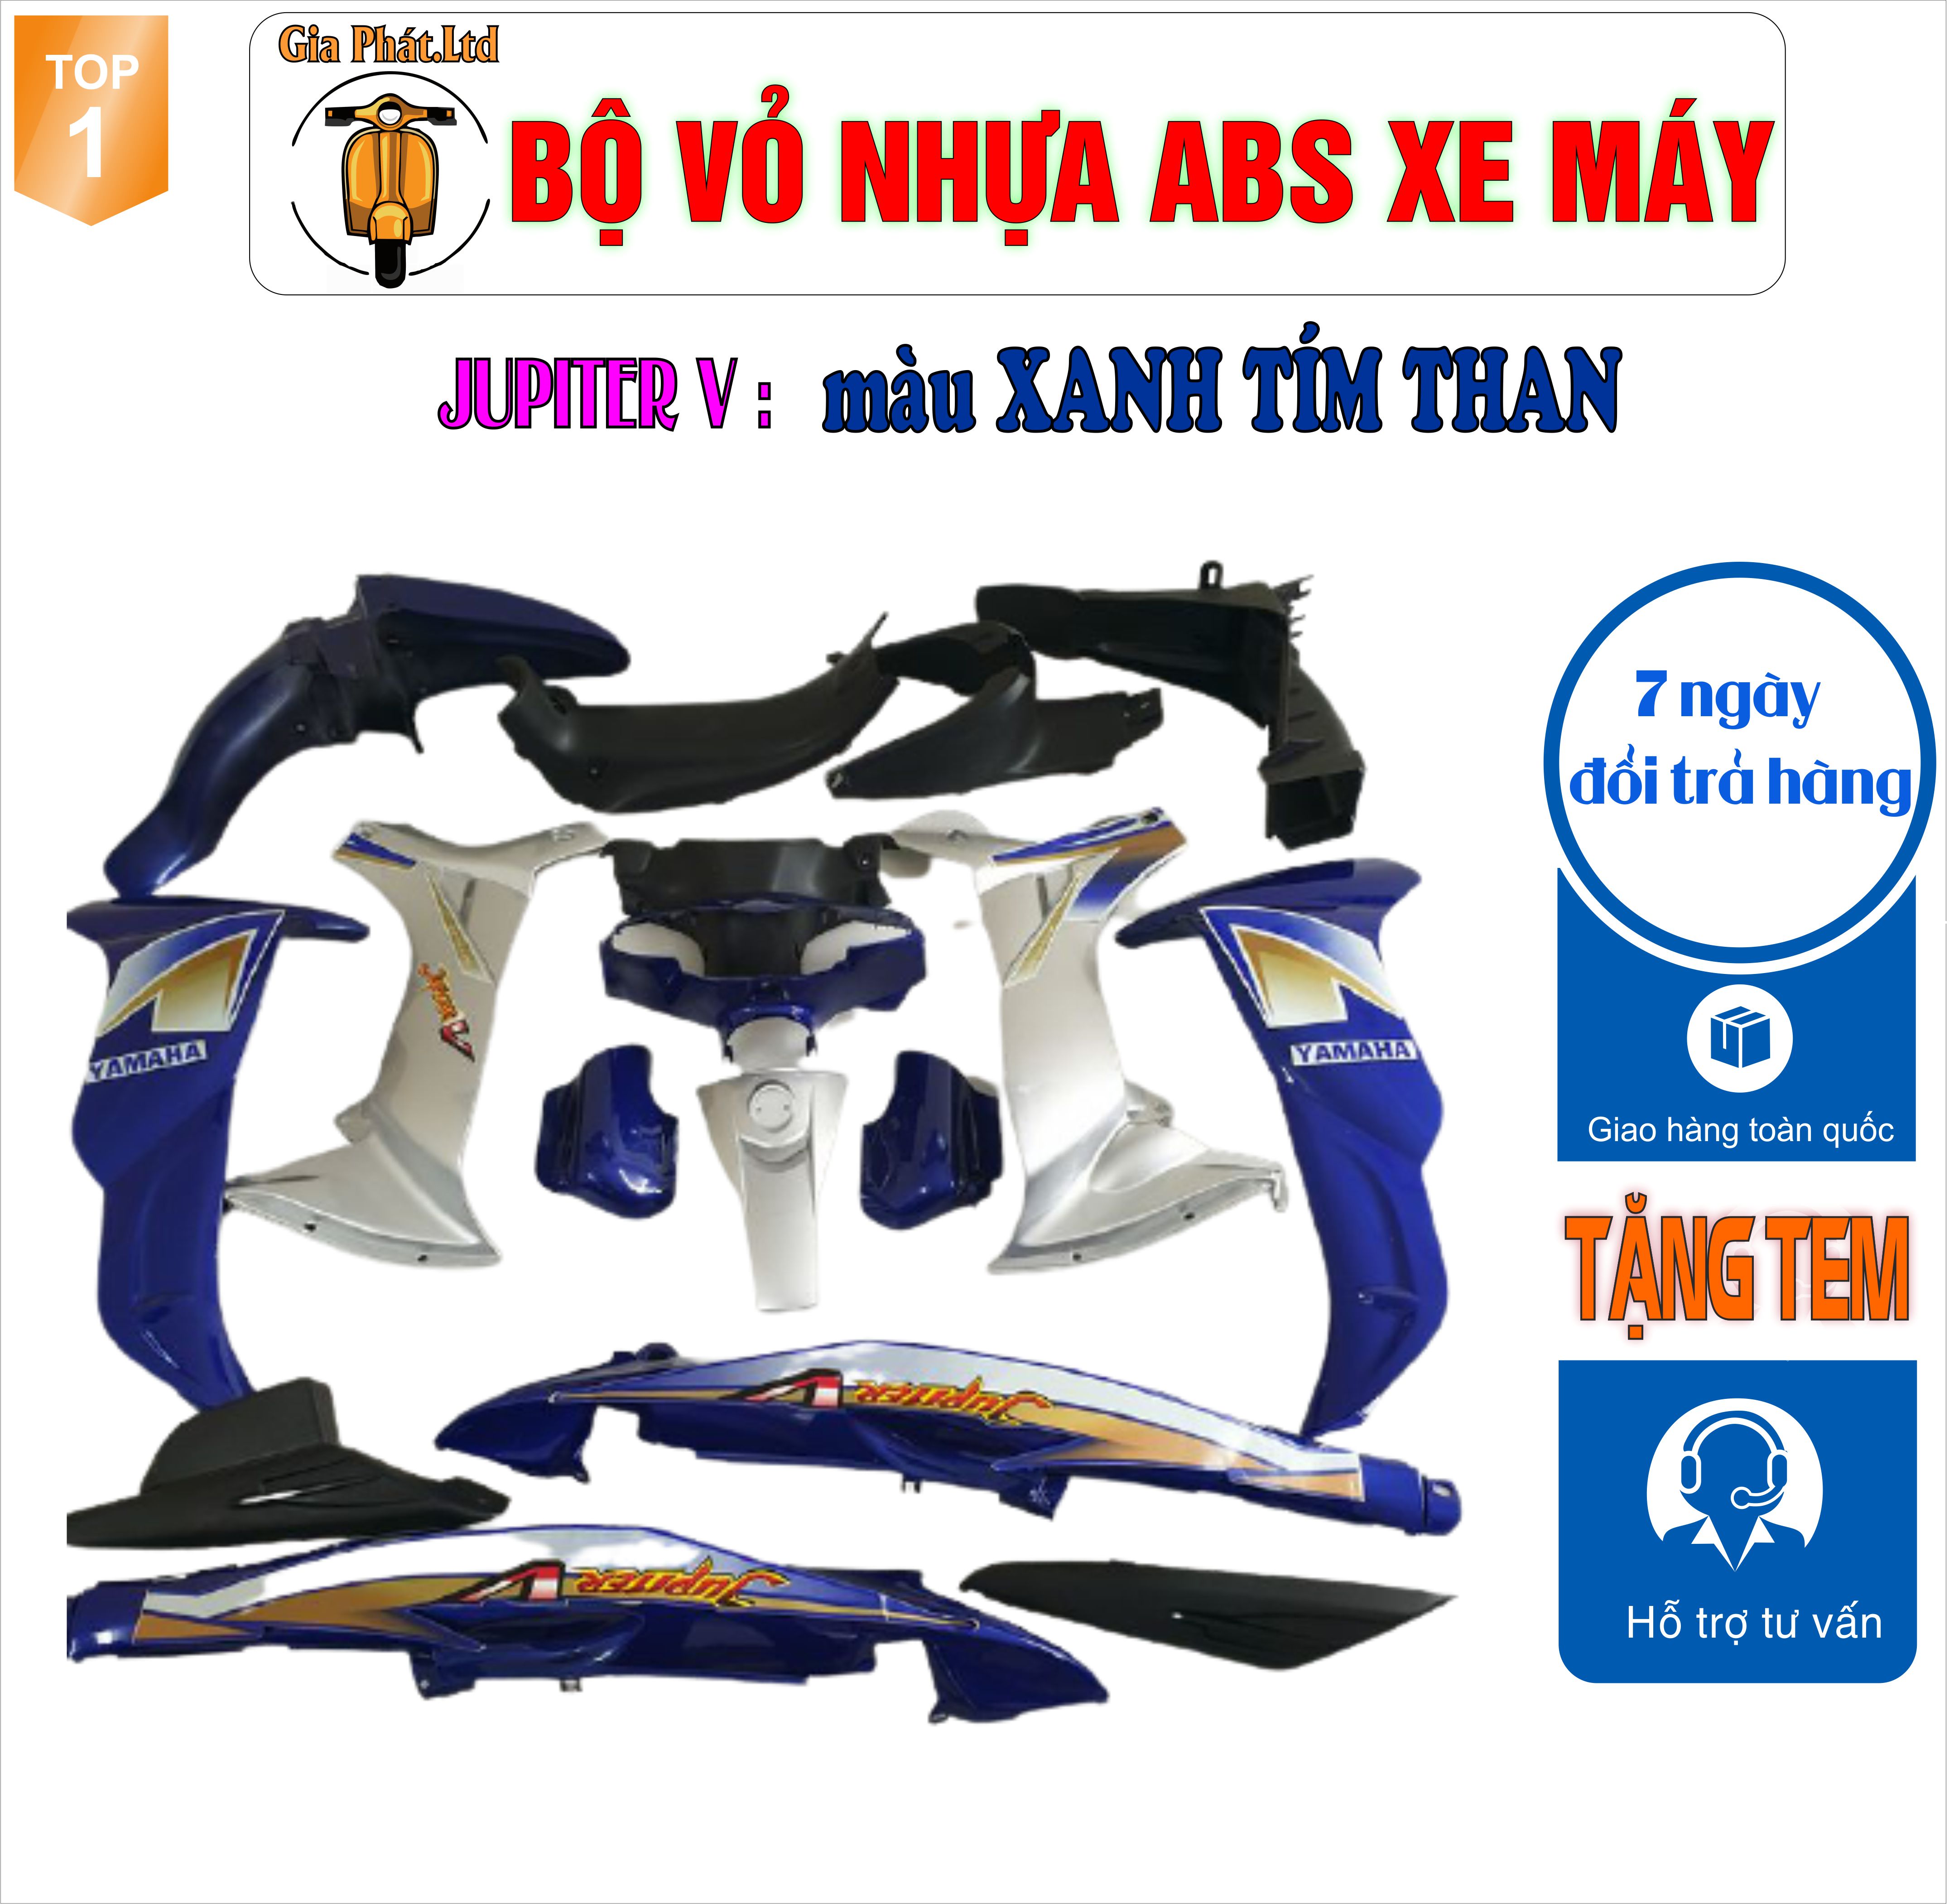 [TẶNG TEM 3 LỚP ] Bộ nhựa áo xe JUPITER V nhựa ABS cao cấp màu XANH TÍM THAN- TKB-668 (8281)